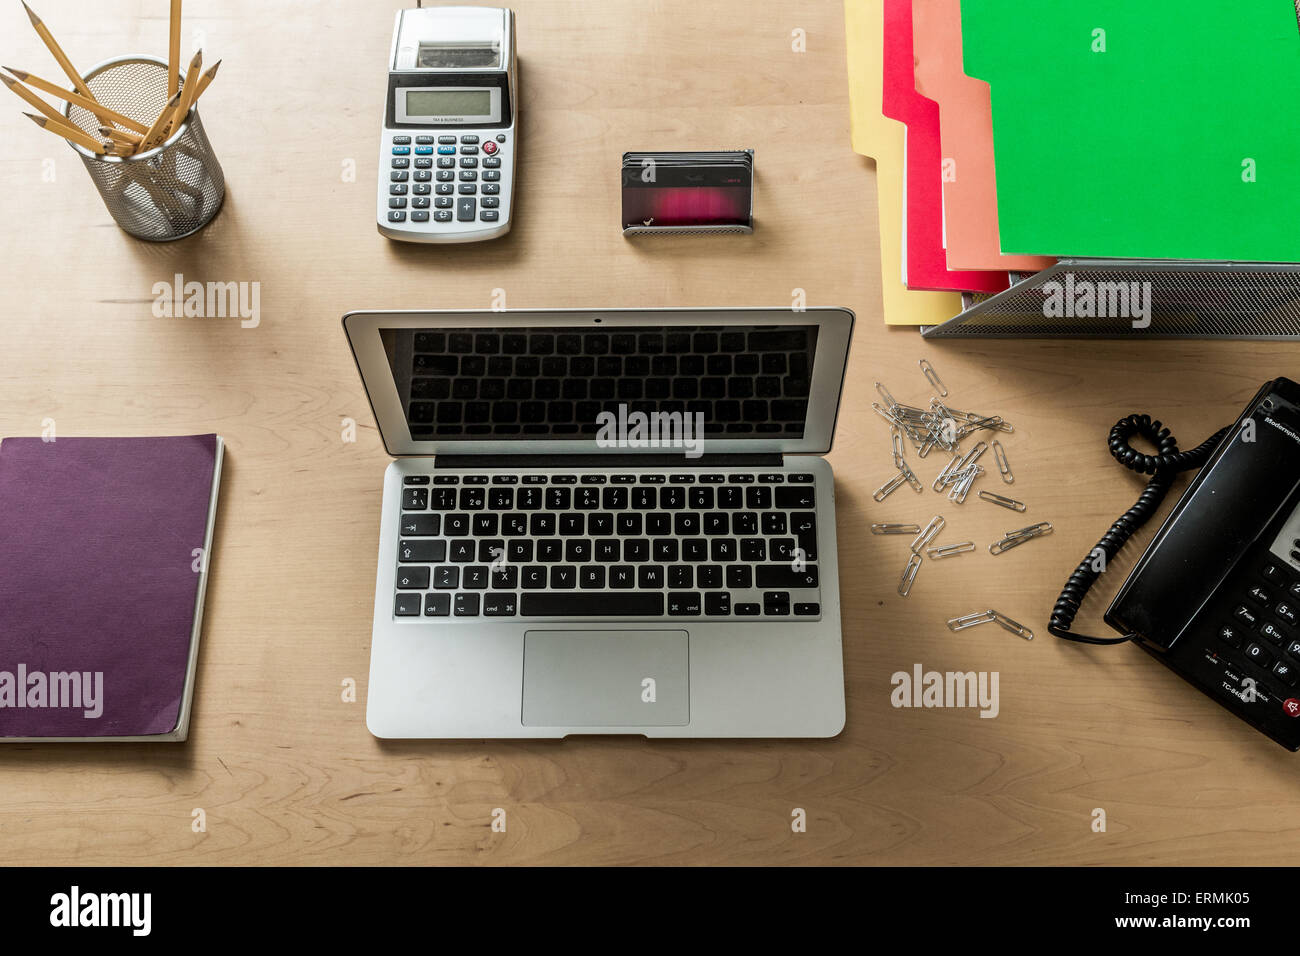 Un moderno espacio de trabajo en su oficina doméstica con laptop, calculadora, teléfono, lápices y otros objetos desde arriba Foto de stock